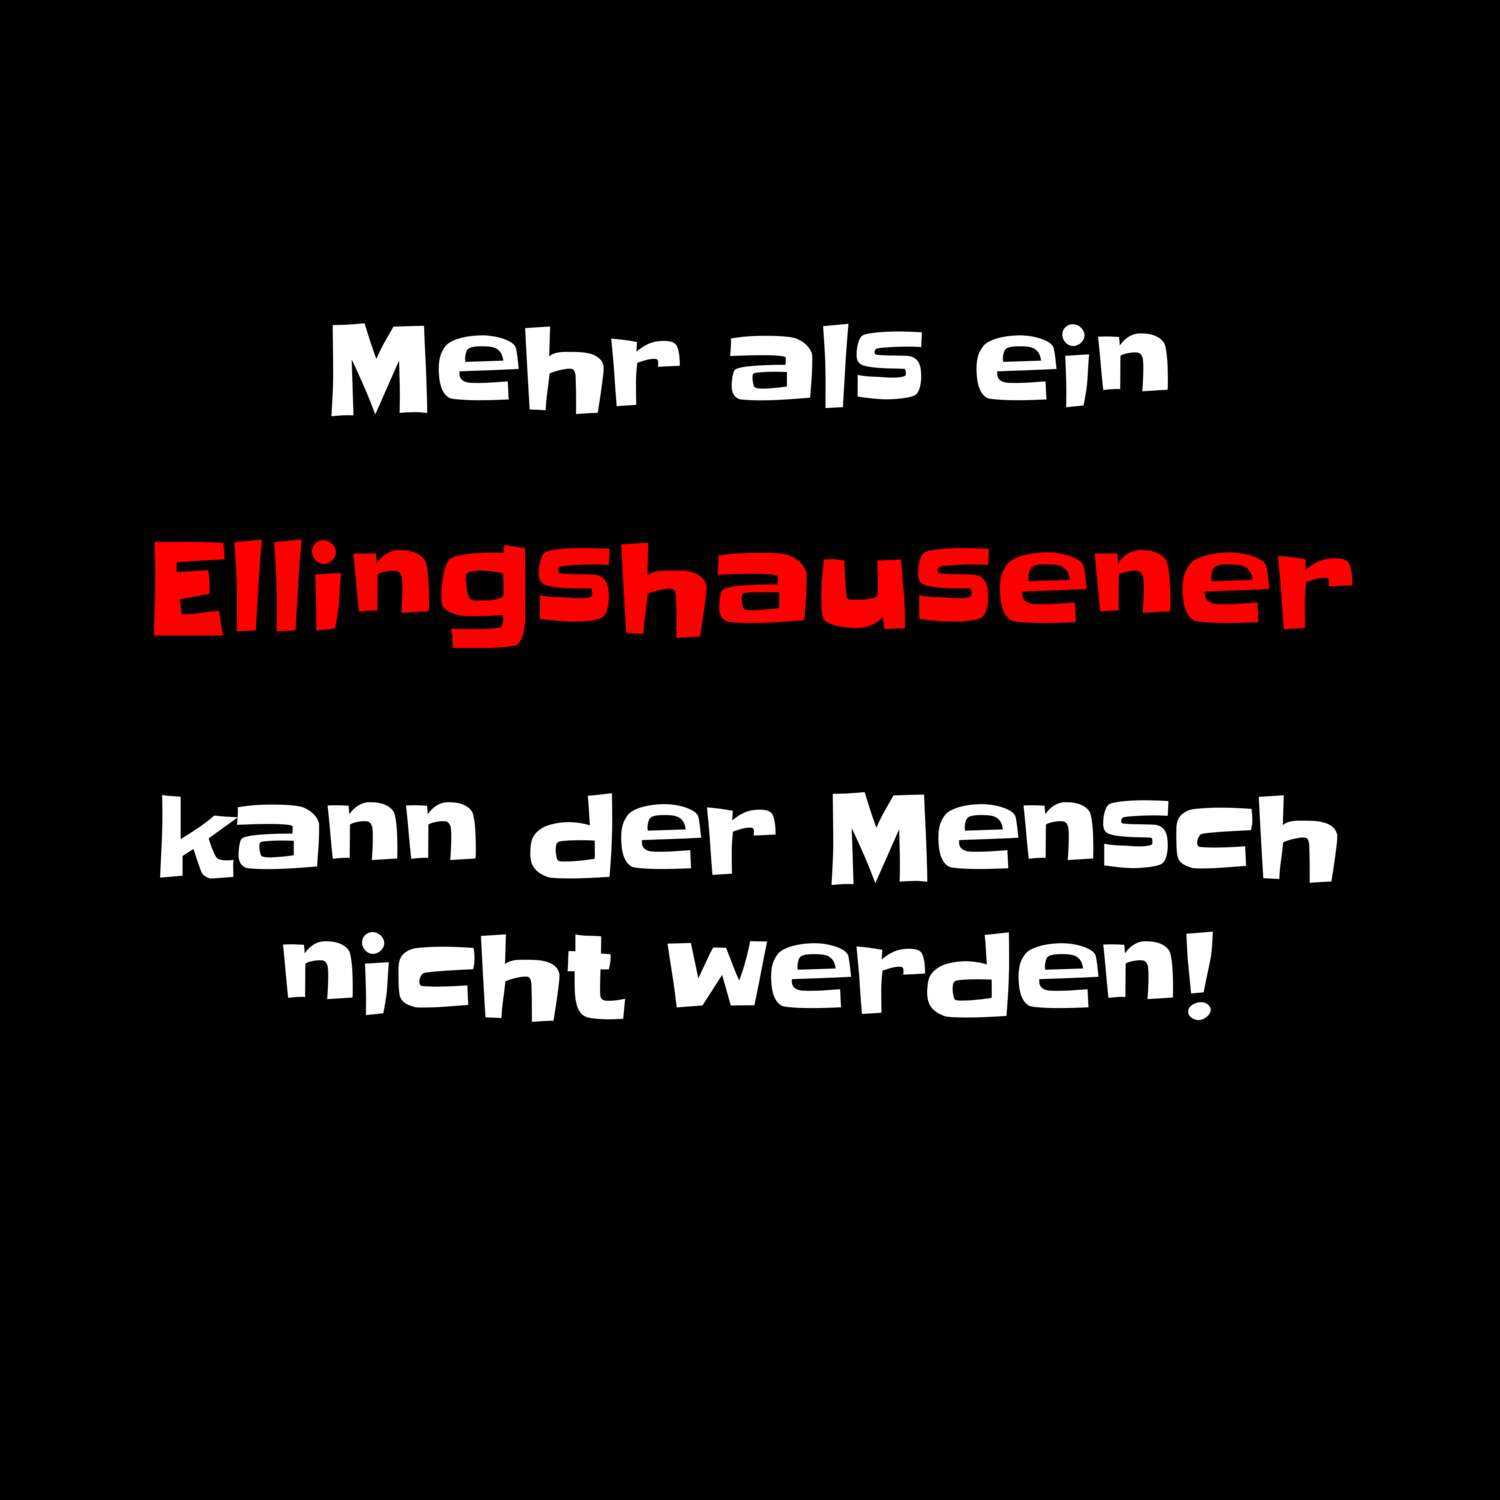 Ellingshausen T-Shirt »Mehr als ein«